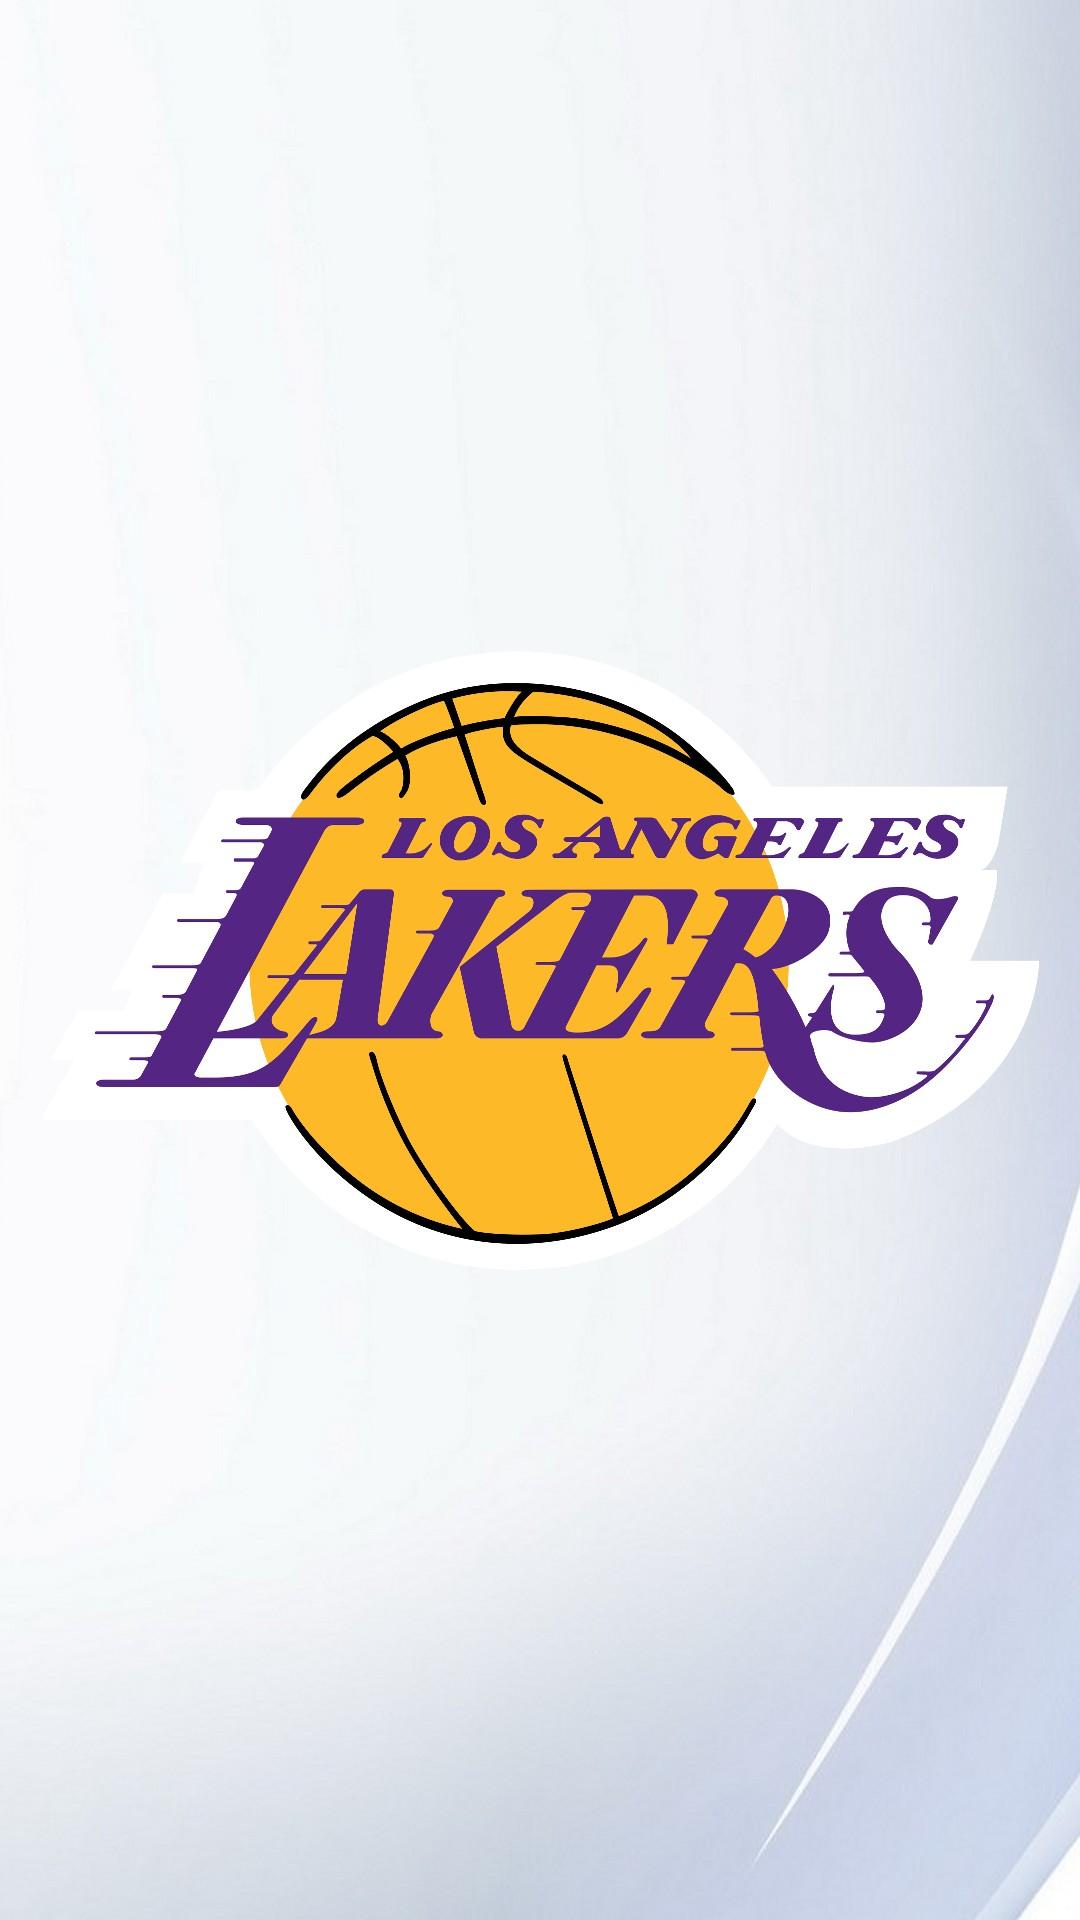 LA Lakers iPhone Wallpaper NBA iPhone Wallpaper